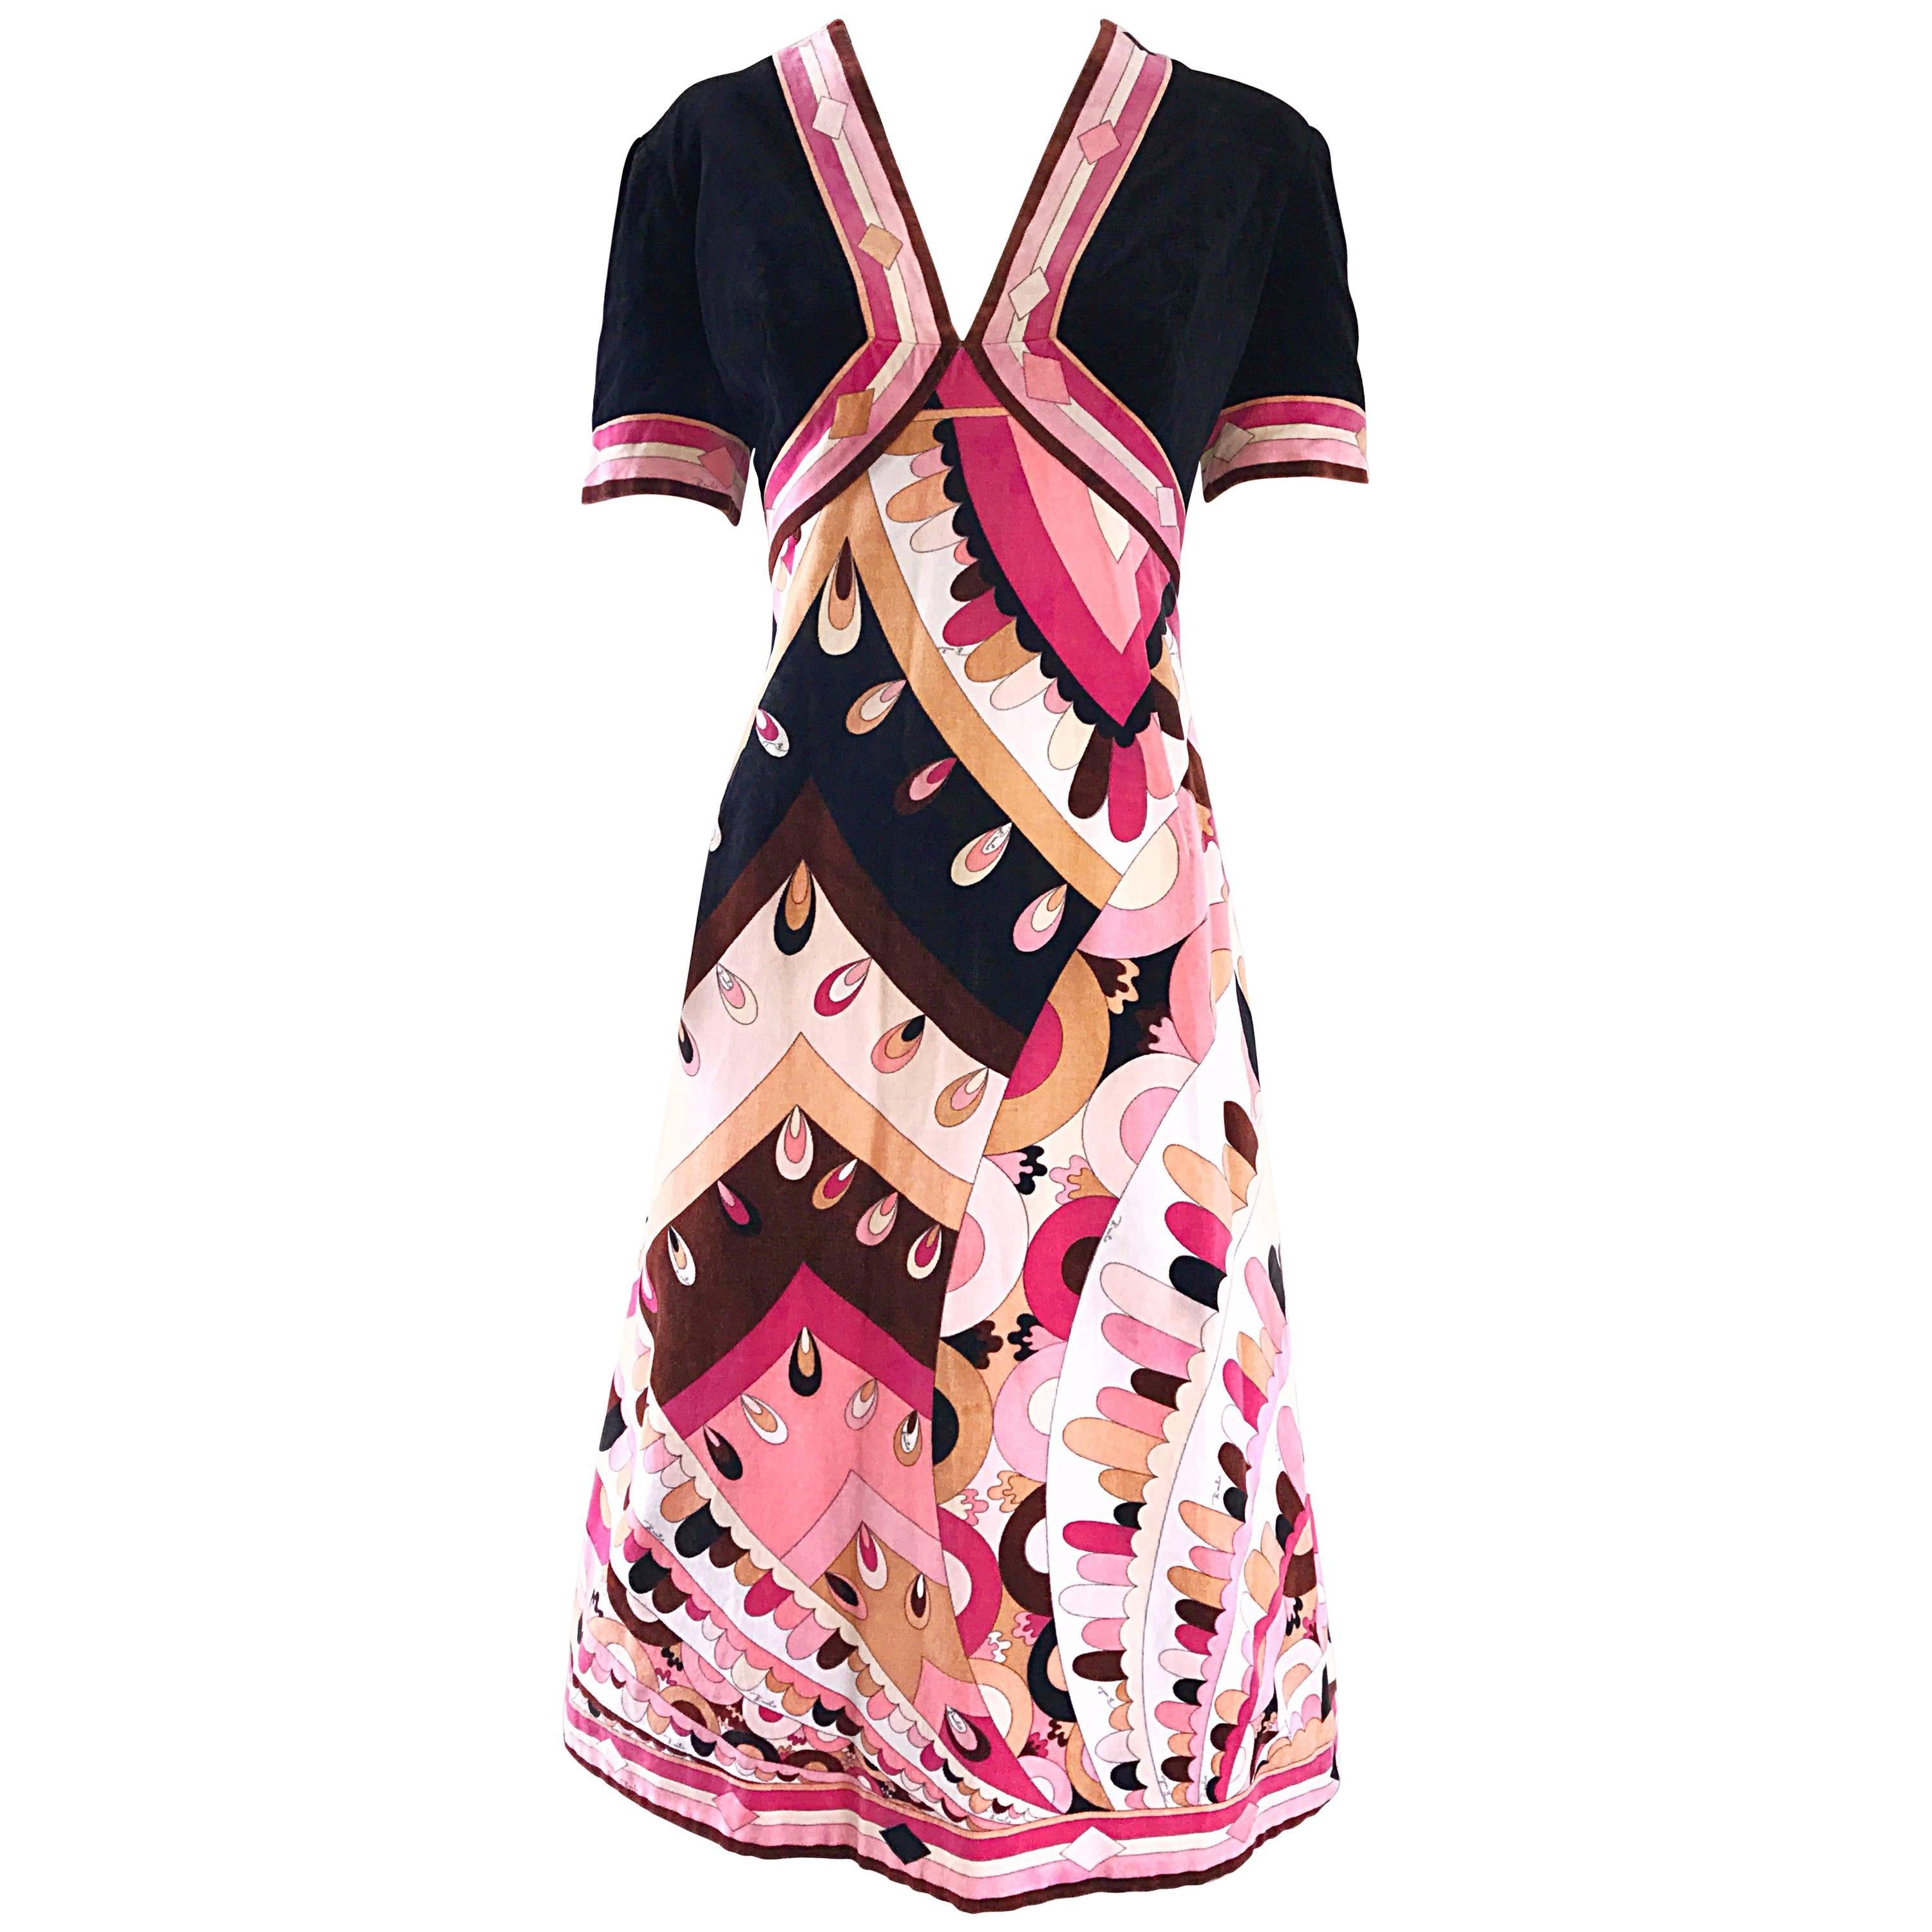 Vintage 60s Emilio Pucci Floral Pattern Dress Medium